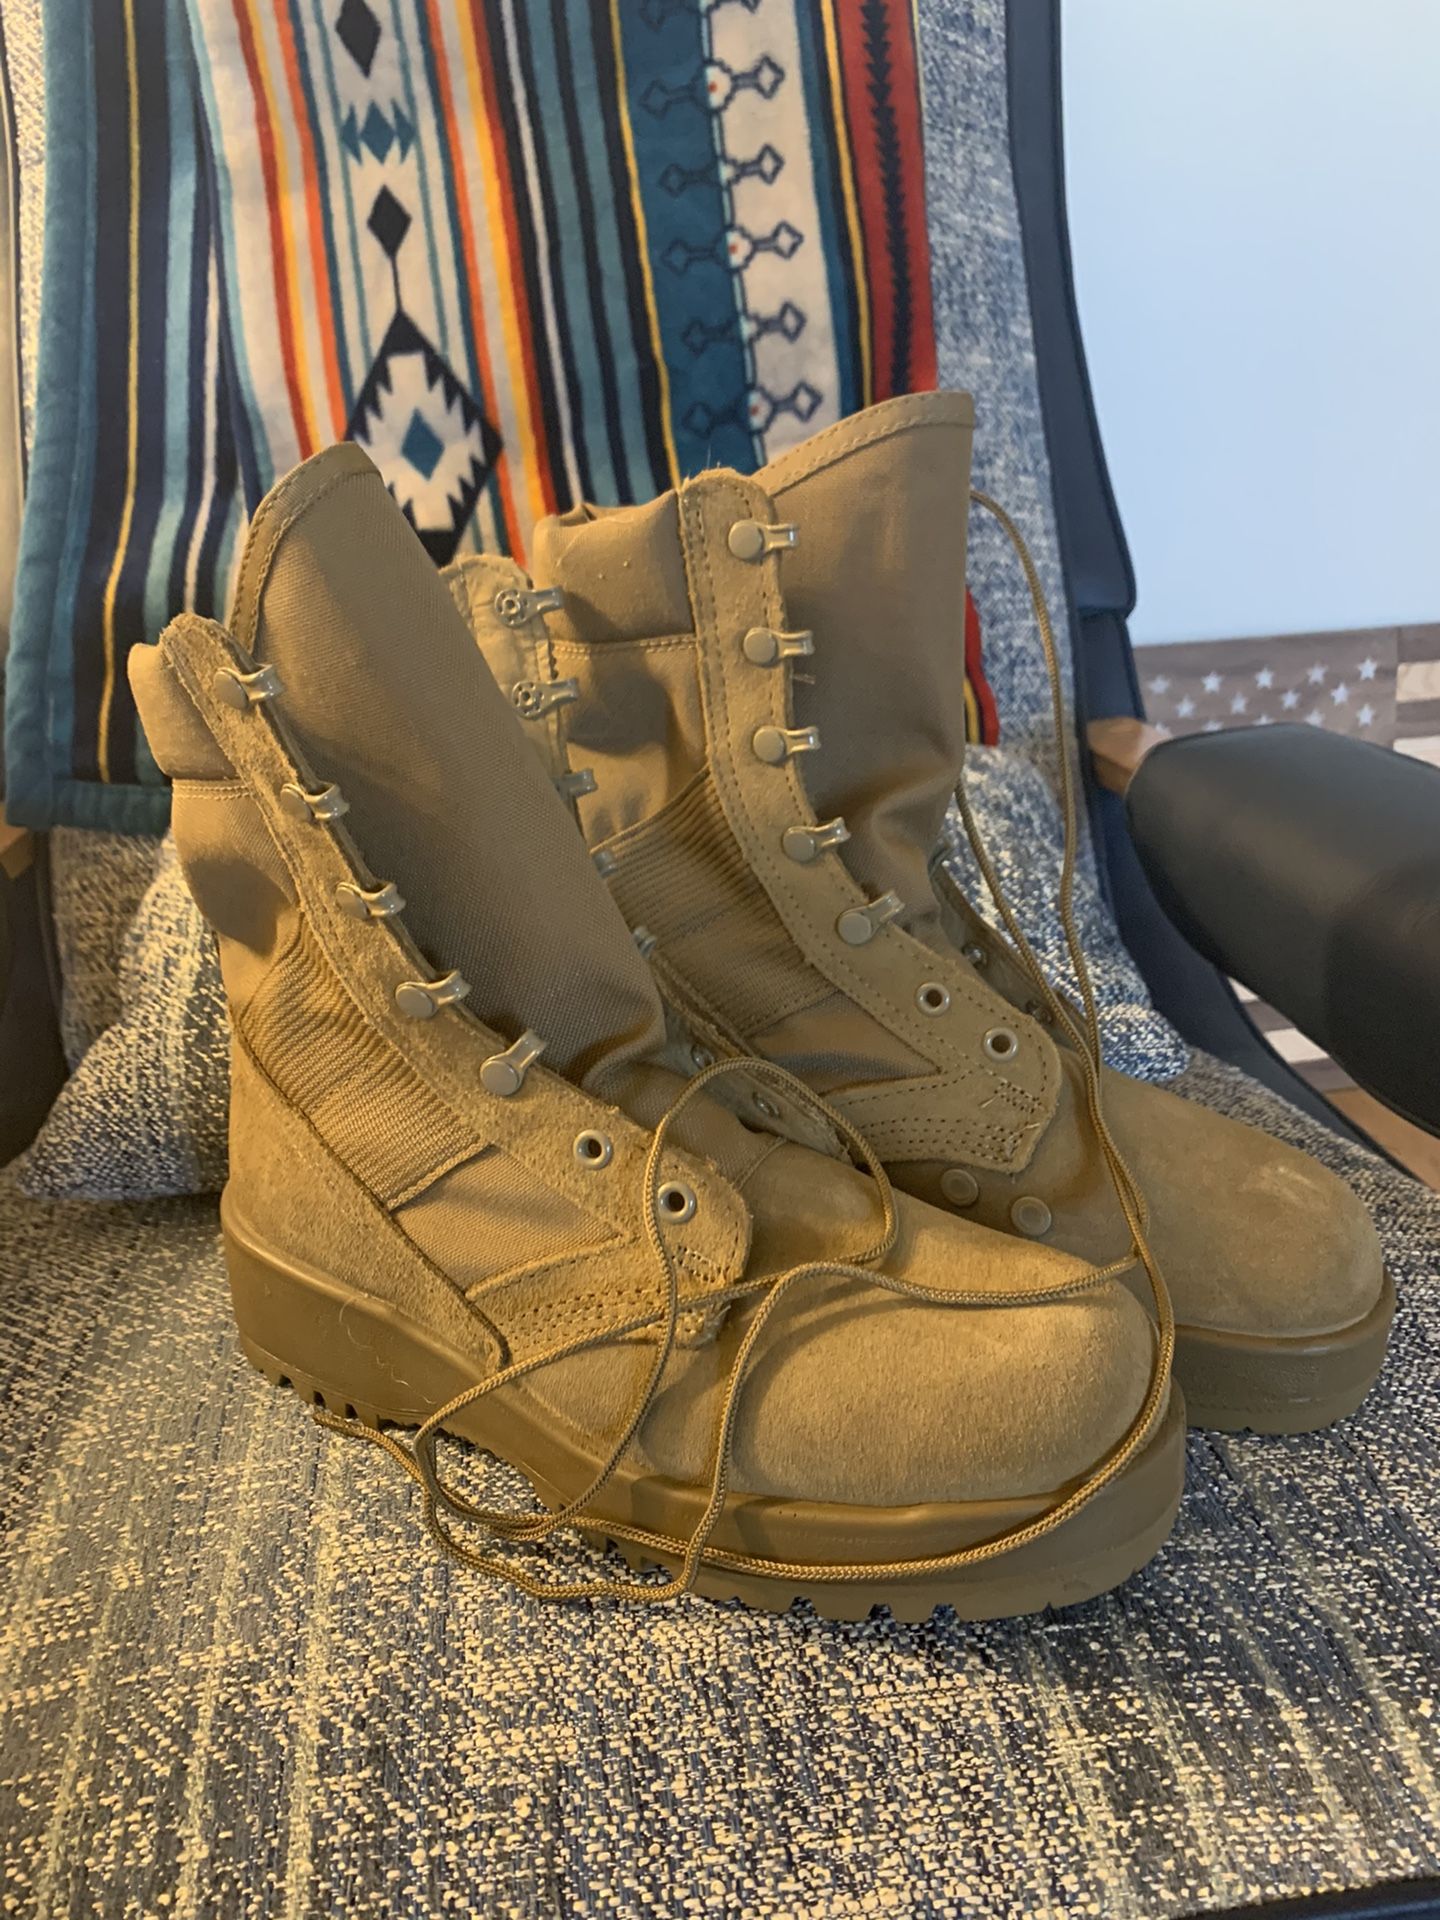 Military service boots Sz 7.5 Men’s